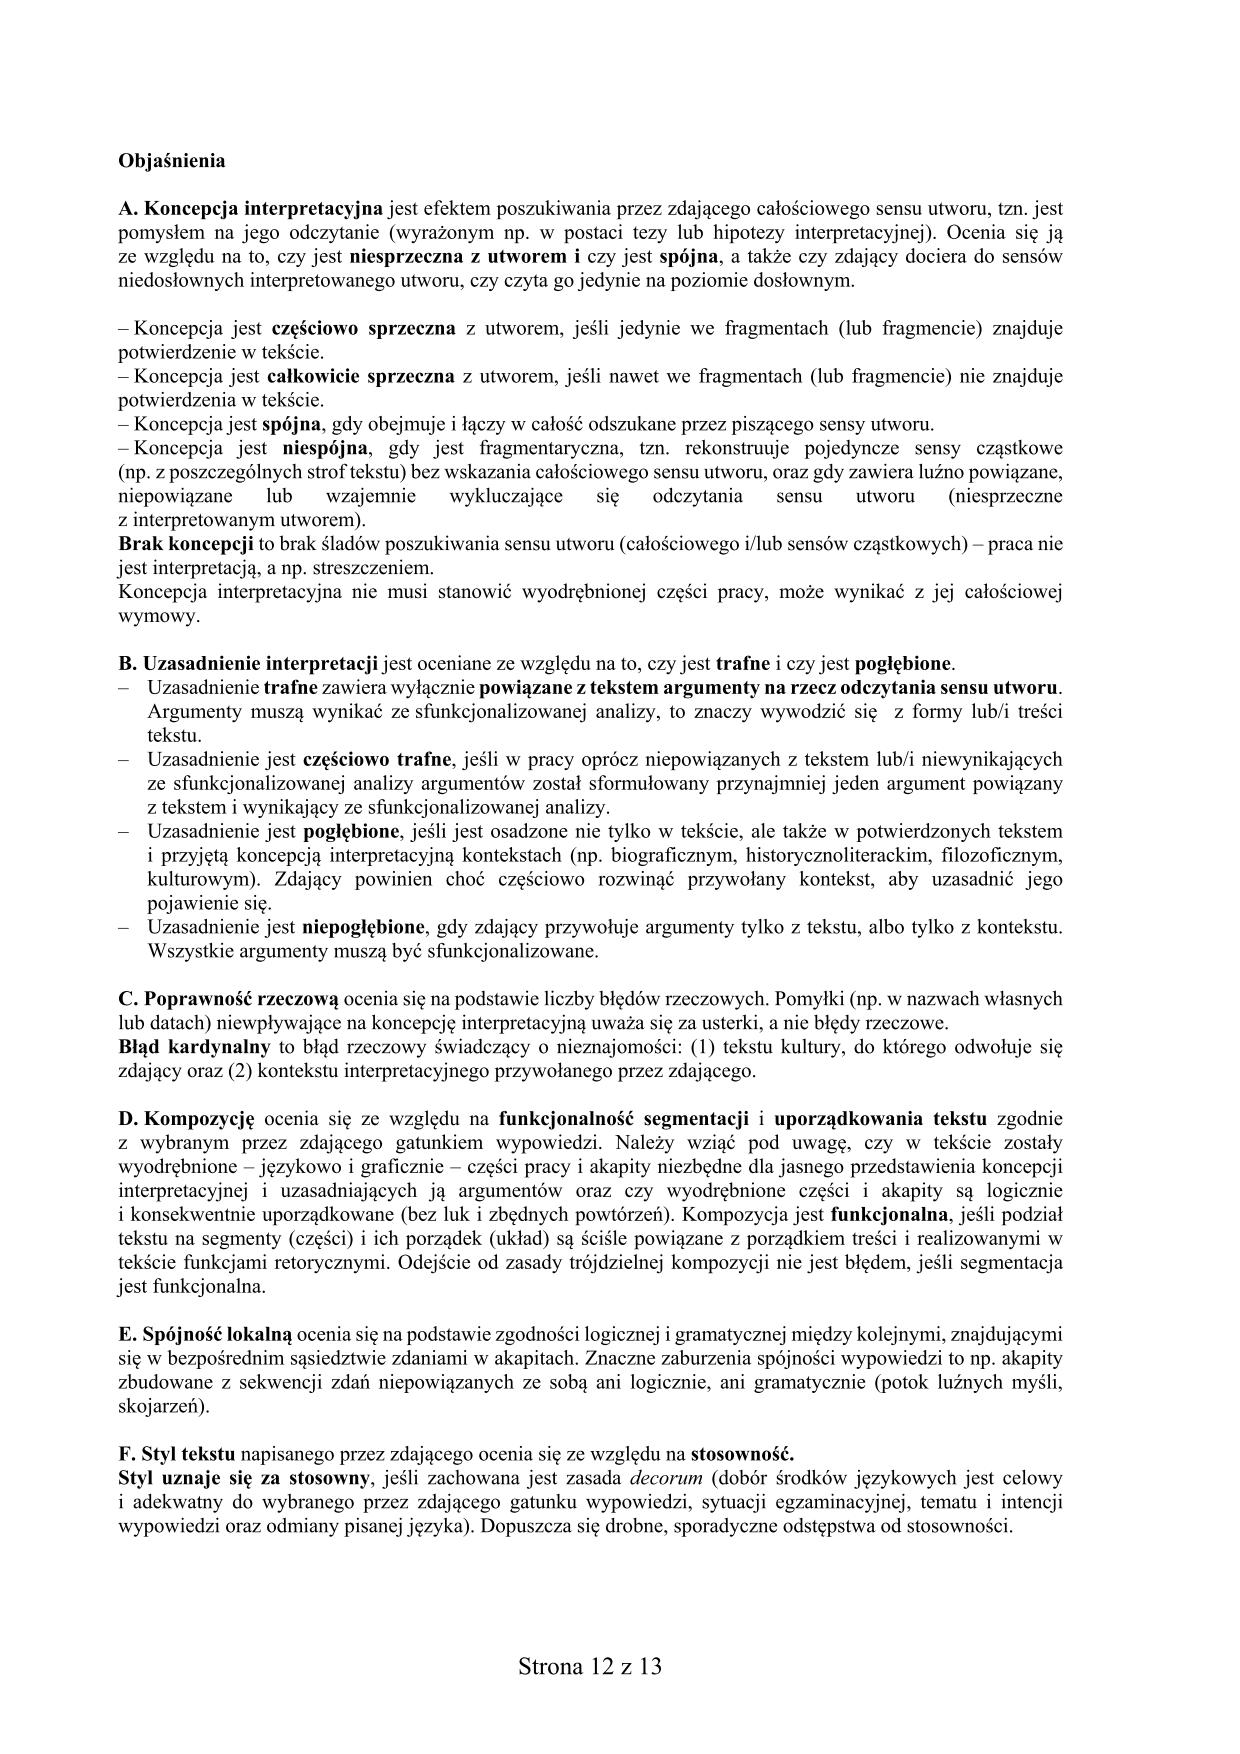 odpowiedzi-jezyk-bialoruski-poziom-podstawowy-matura-2017 - 12